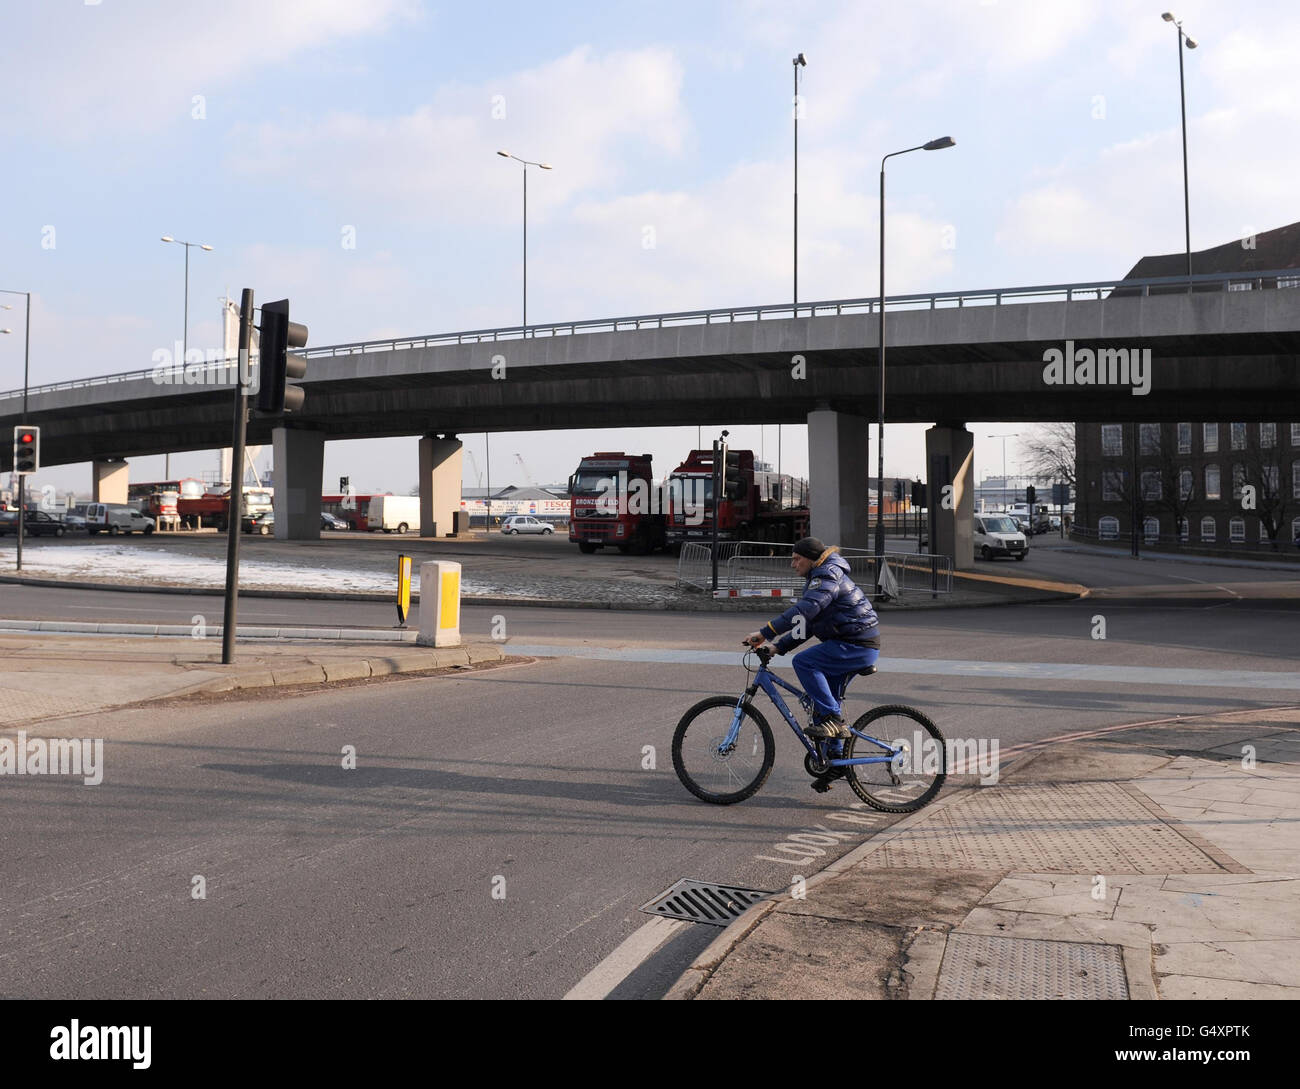 Una visione generale della rotonda al volo Bow, a Bromley-by-Bow, Londra est, come il primo dei 500 incroci da rivedere sotto Moves per migliorare la sicurezza della bicicletta sono stati annunciati oggi, tra cui suggerimenti di dare alle biciclette un 'inizio precoce' al semaforo verde. Foto Stock